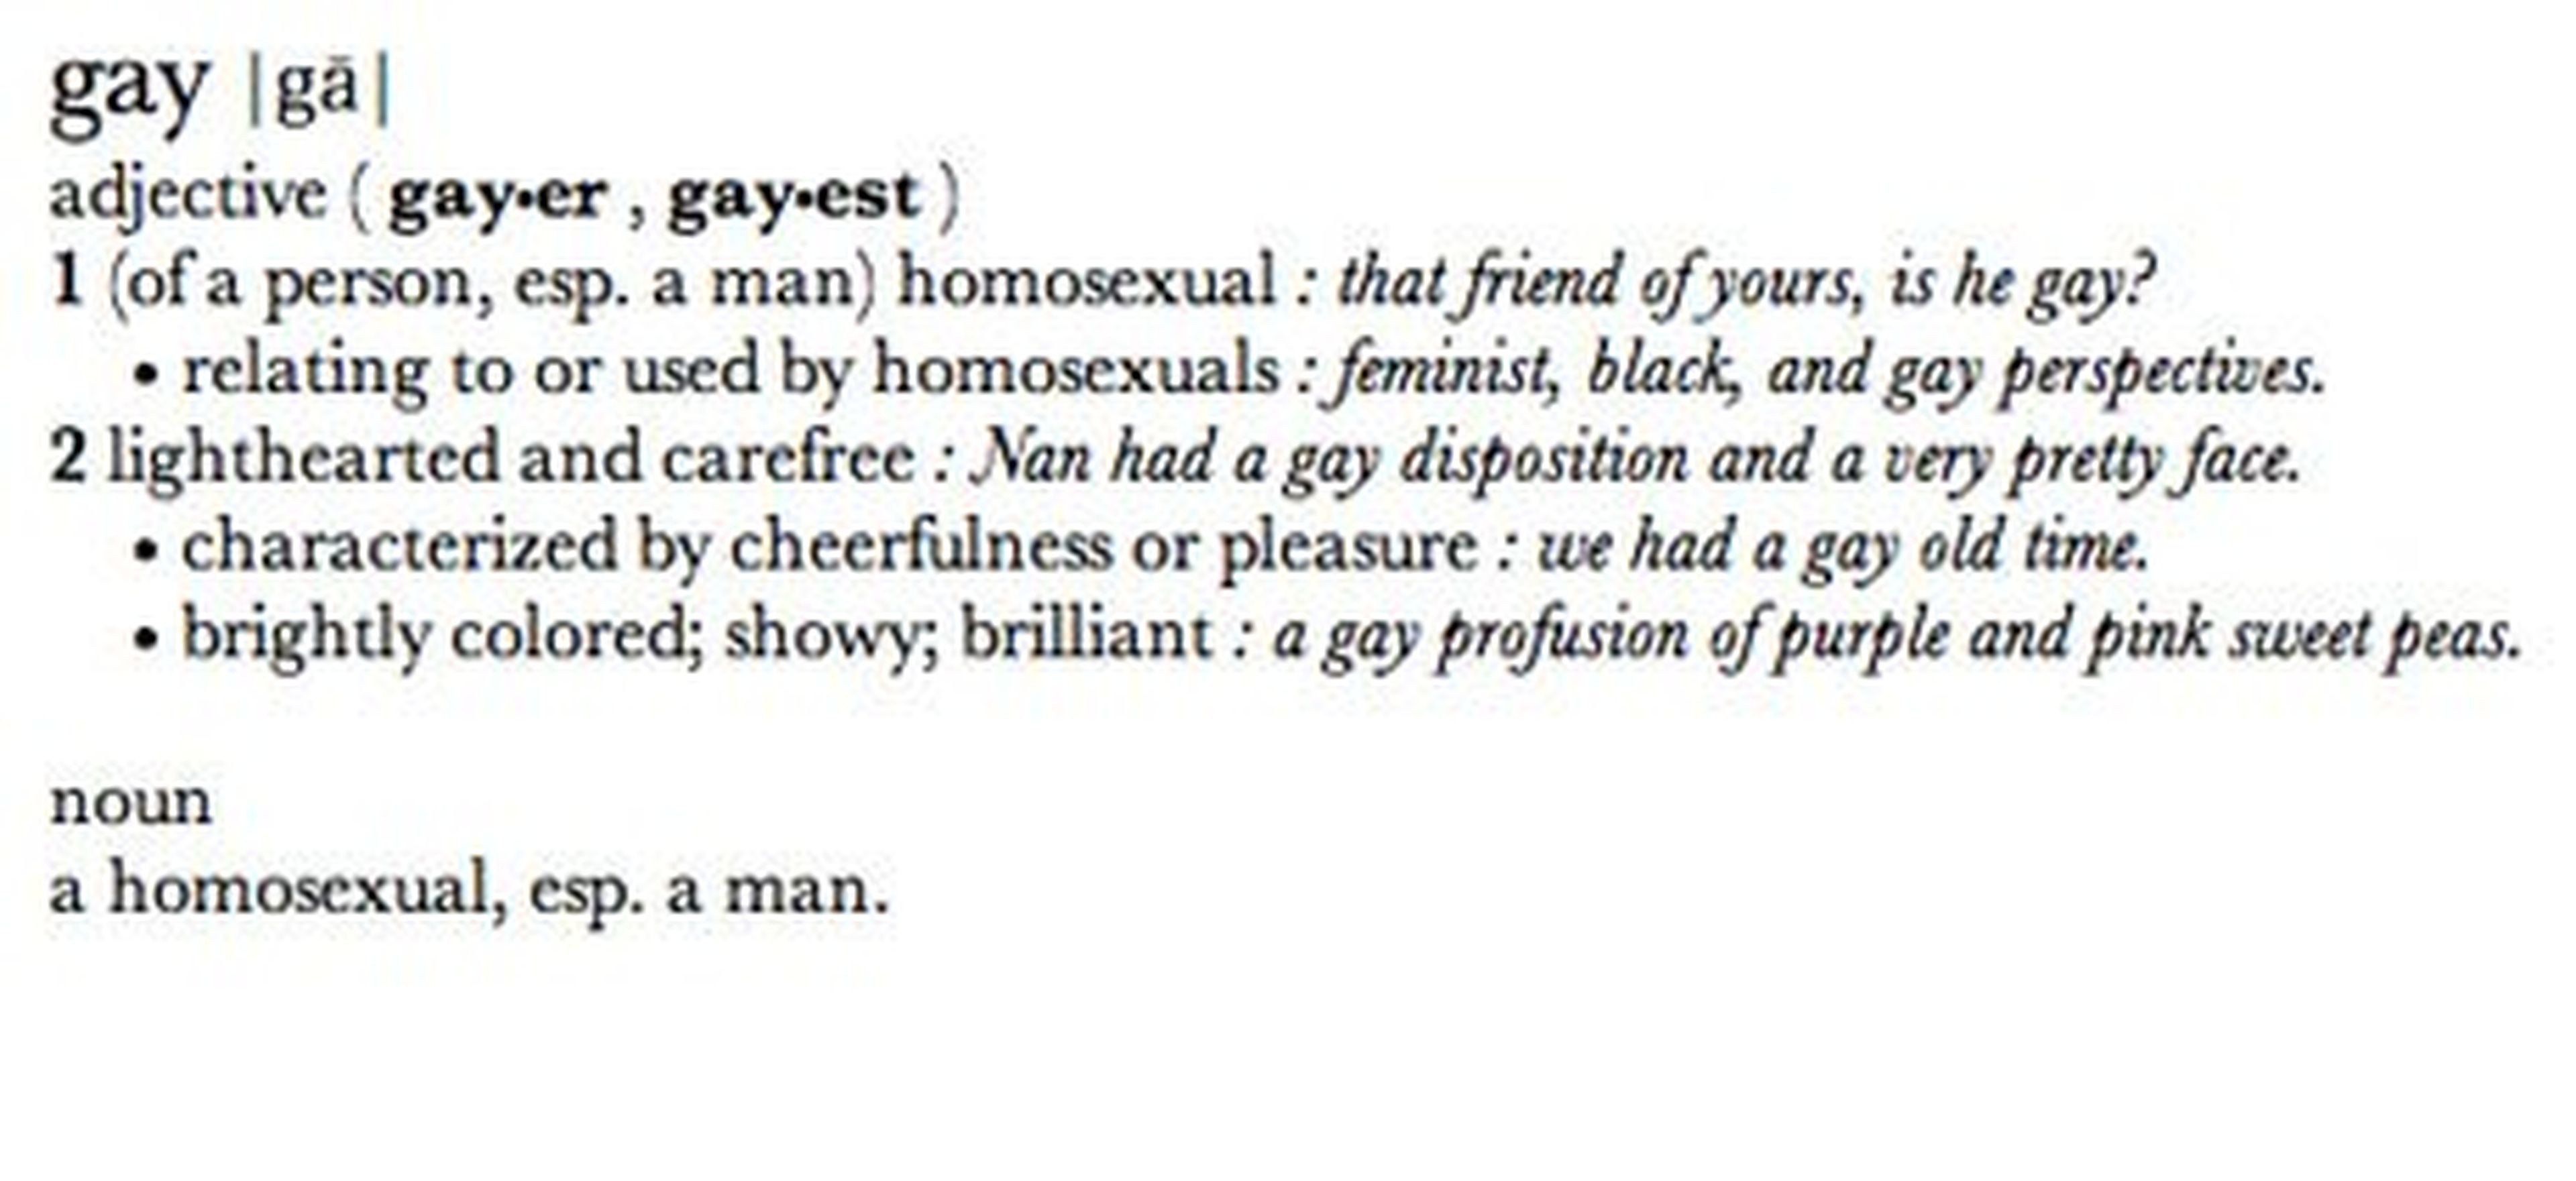 definición "gay" diccionario apple corregida